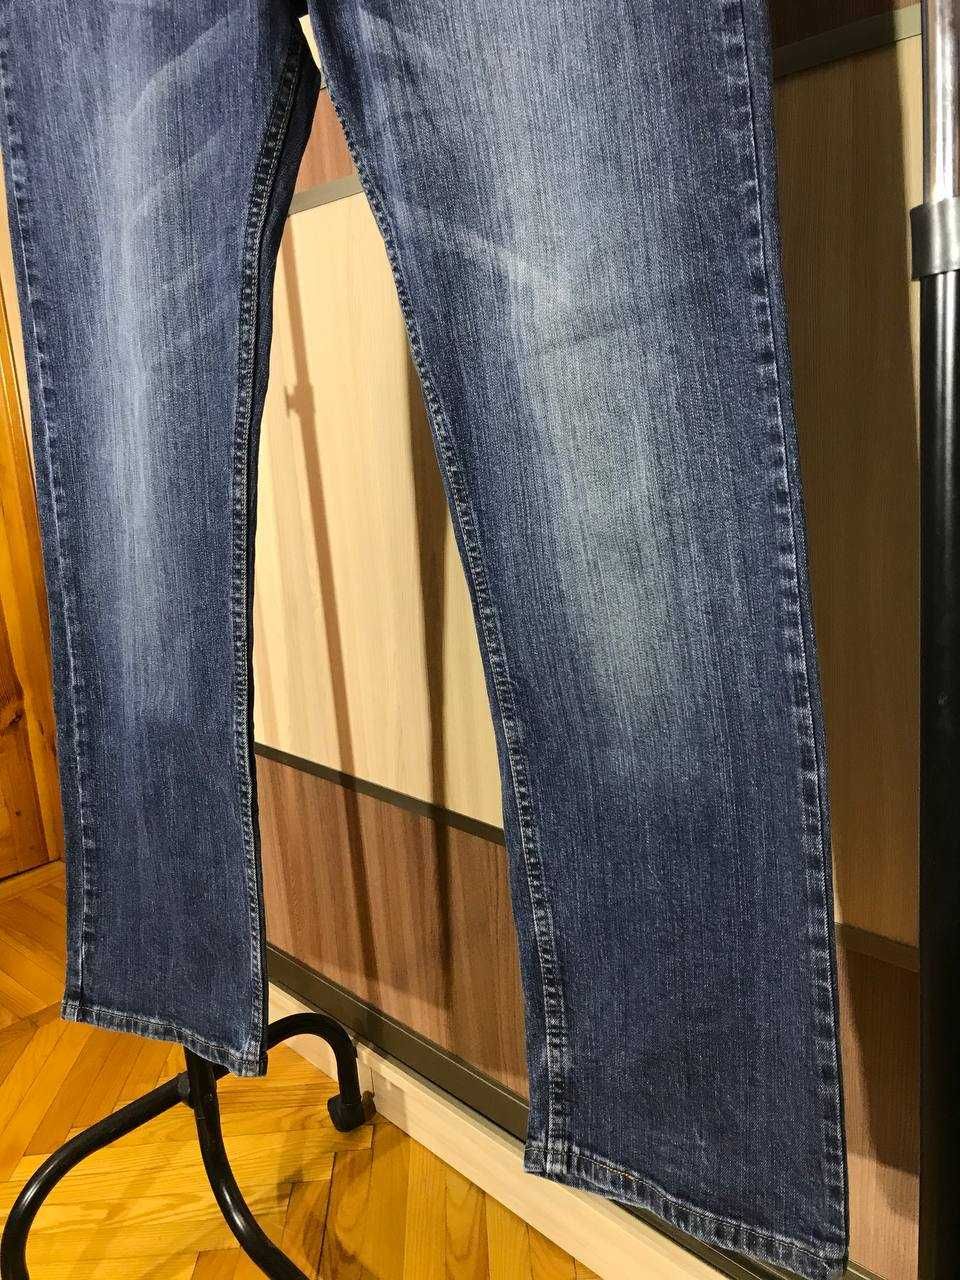 Мужские джинсы штаны Vintage Wrangler Size 33/32 оригинал